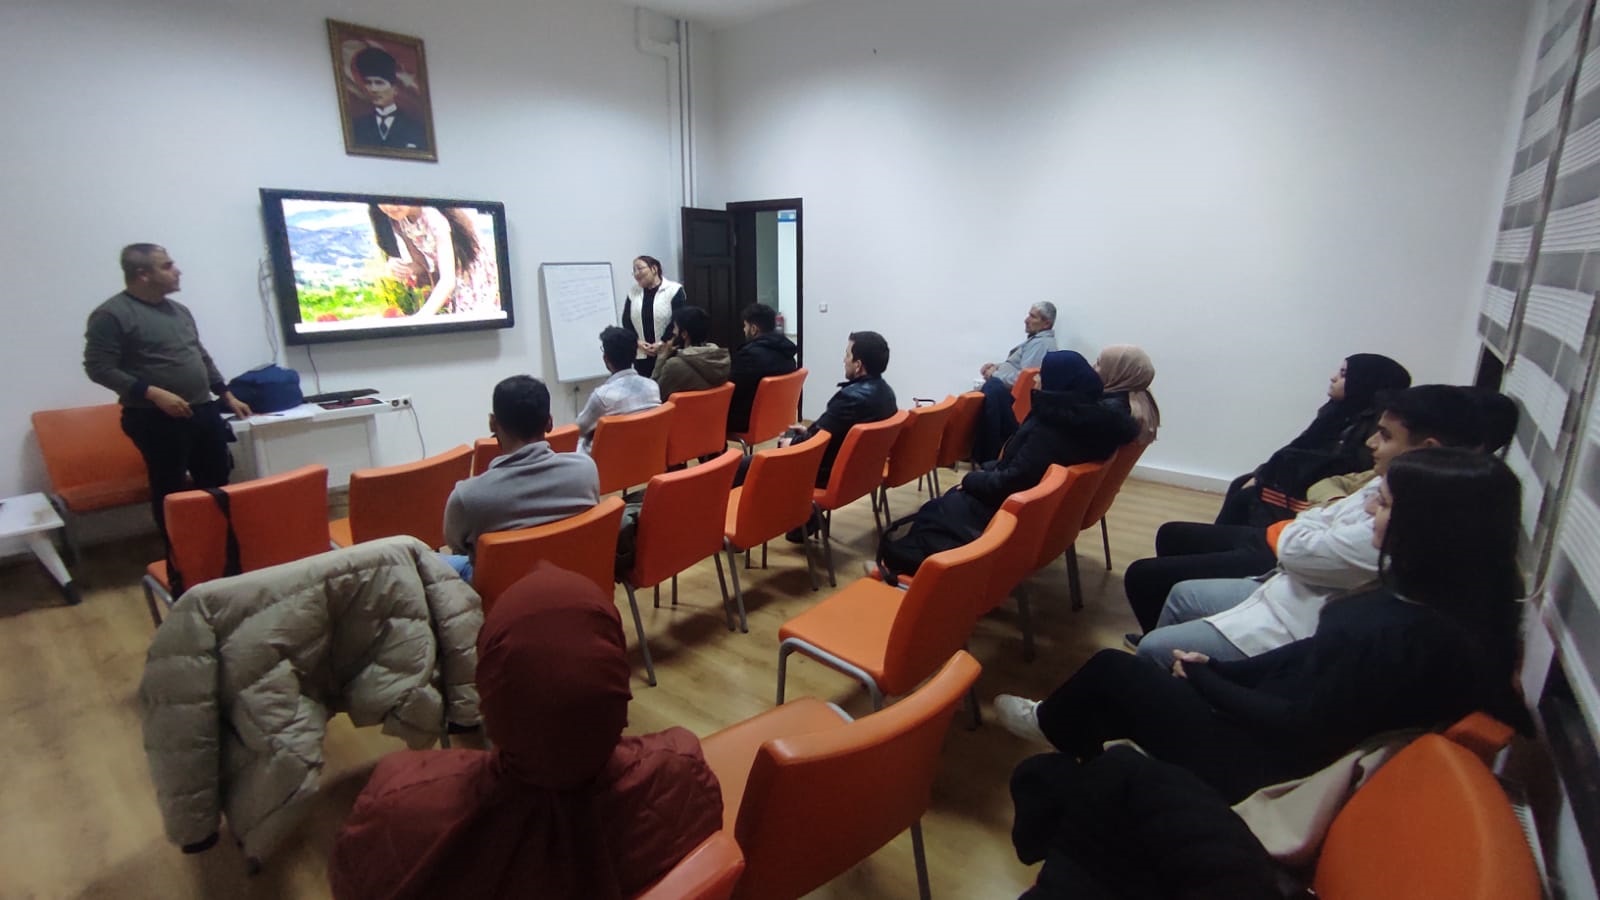 Malatya'da ‘Dijital Fotoğrafçılık’ kursu açıldı